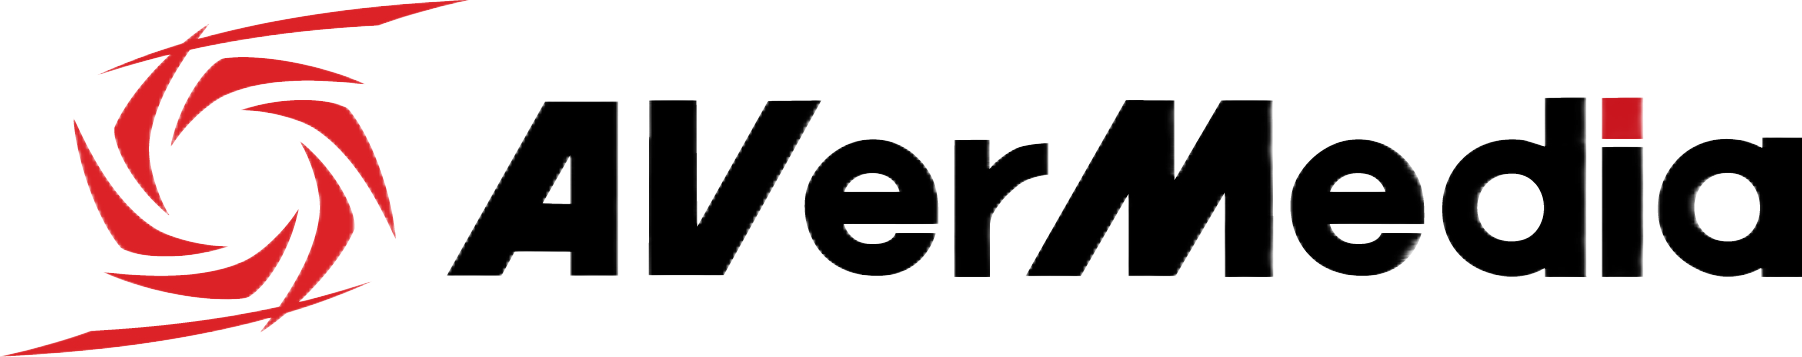 AVerMedia_logo_transparent